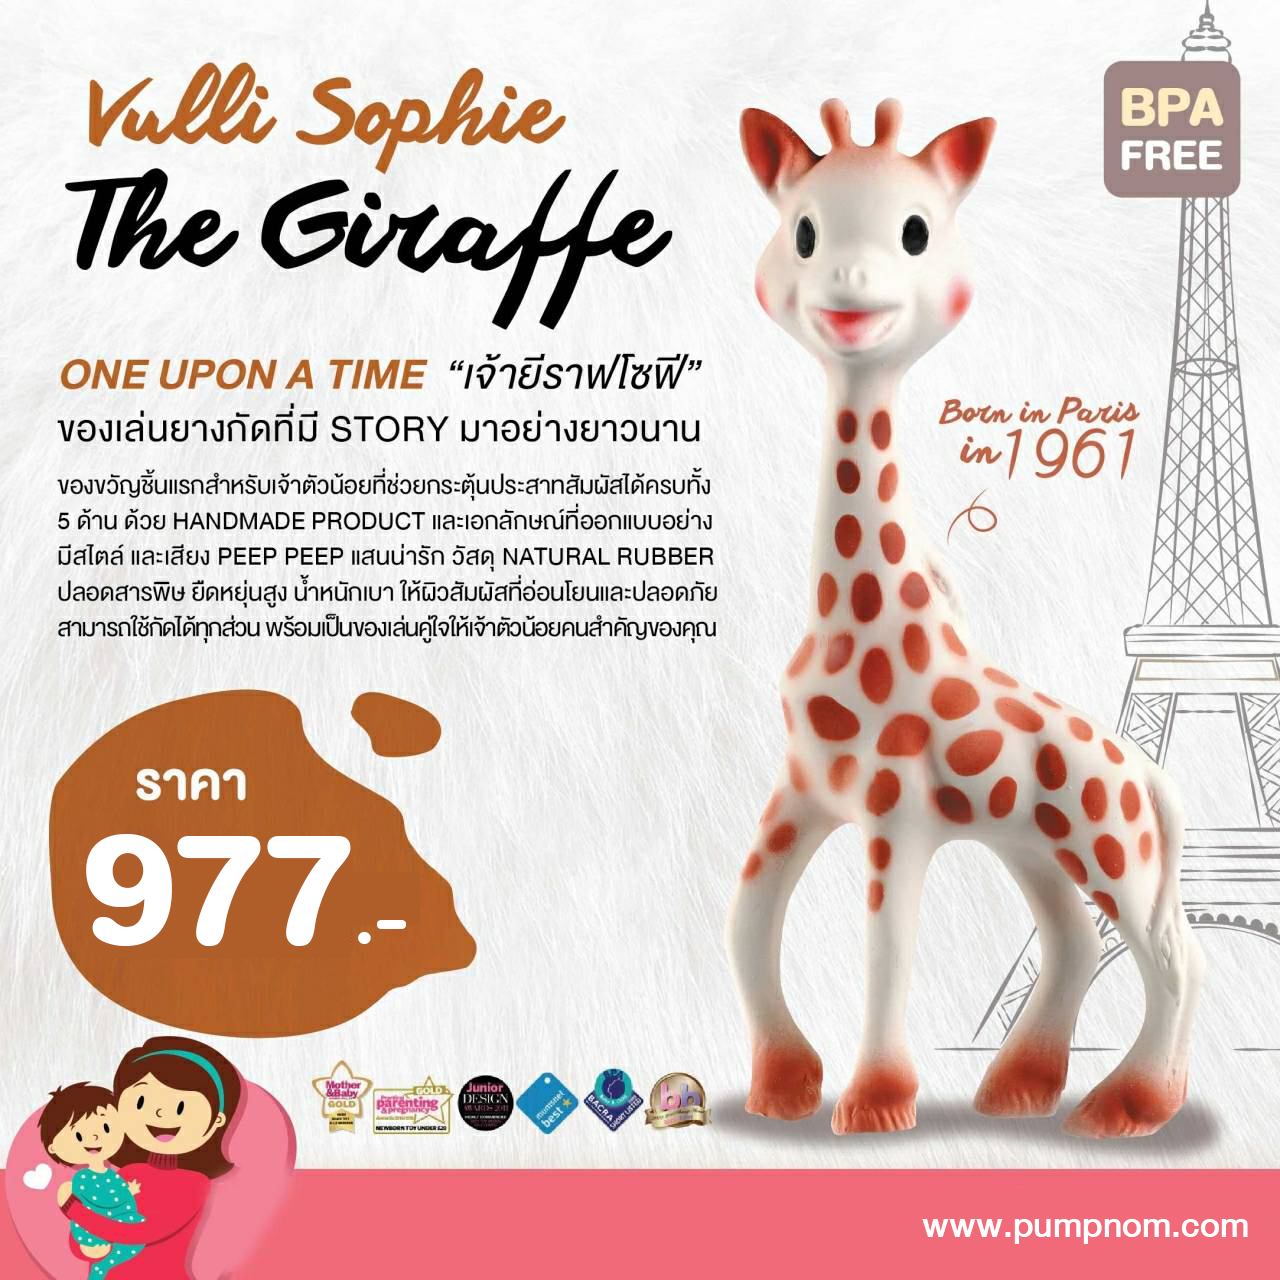 รีวิว SOPHIE THE GIRAFFE (โซฟี เดอะ ยีราฟ) ยางกัดธรรมชาติ Vulli Sophie the Giraffe (แบบกล่อง) BPA FREE จากฝรั่งเศส ใช้ได้ตั้งแต่แรกเกิด